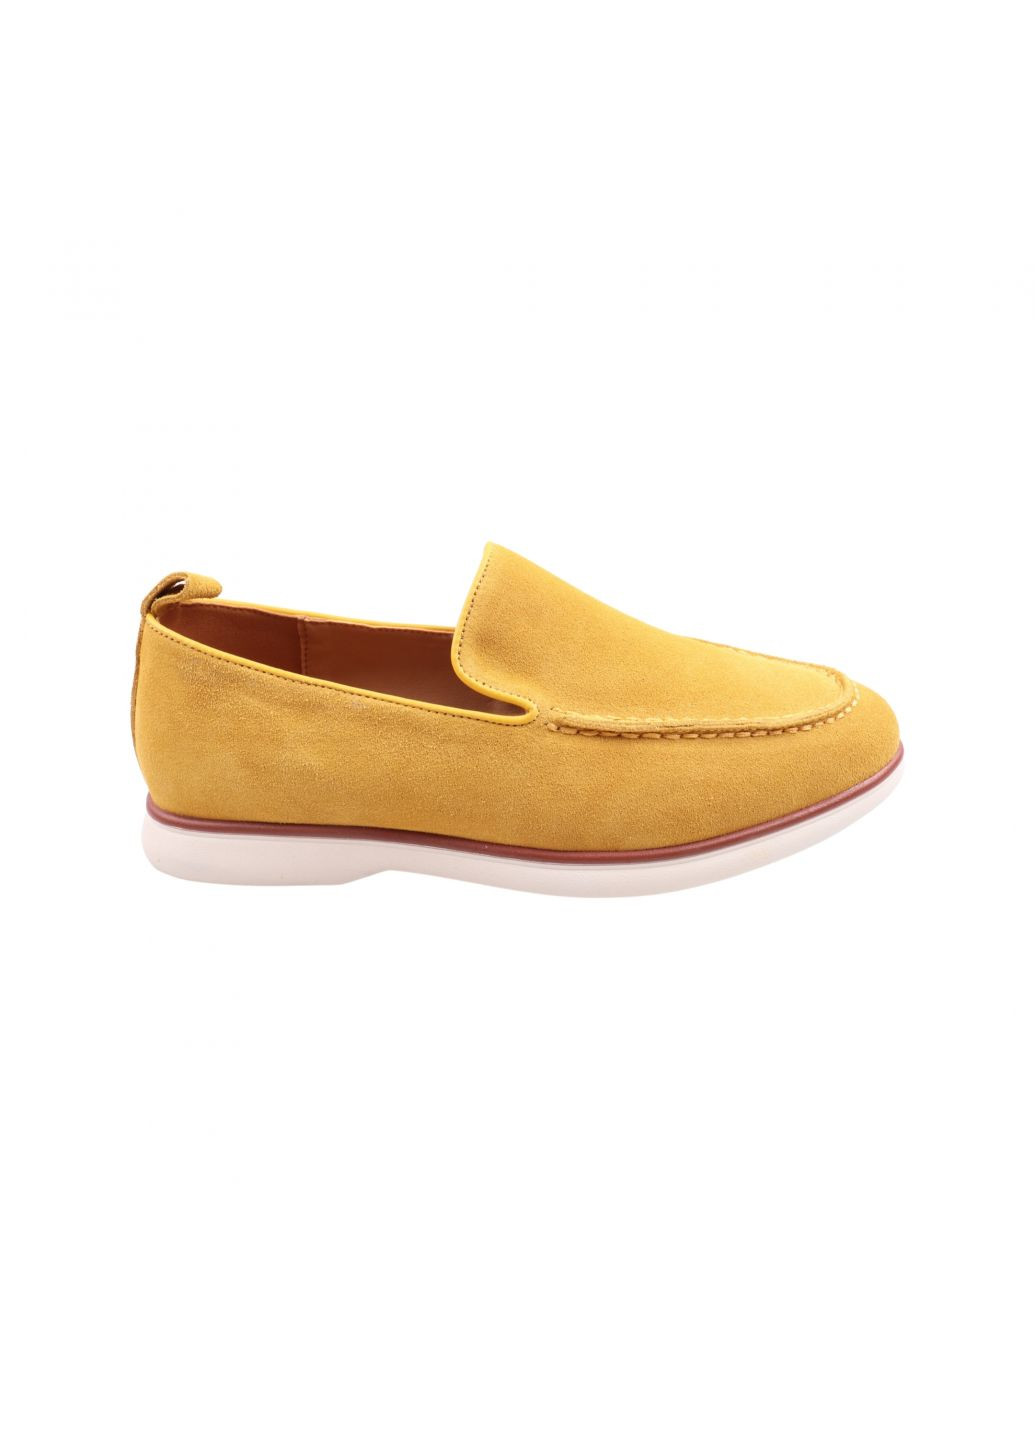 Туфлі жіночі жовті натуральна замша Gifanni 190-23dtc (257454676)